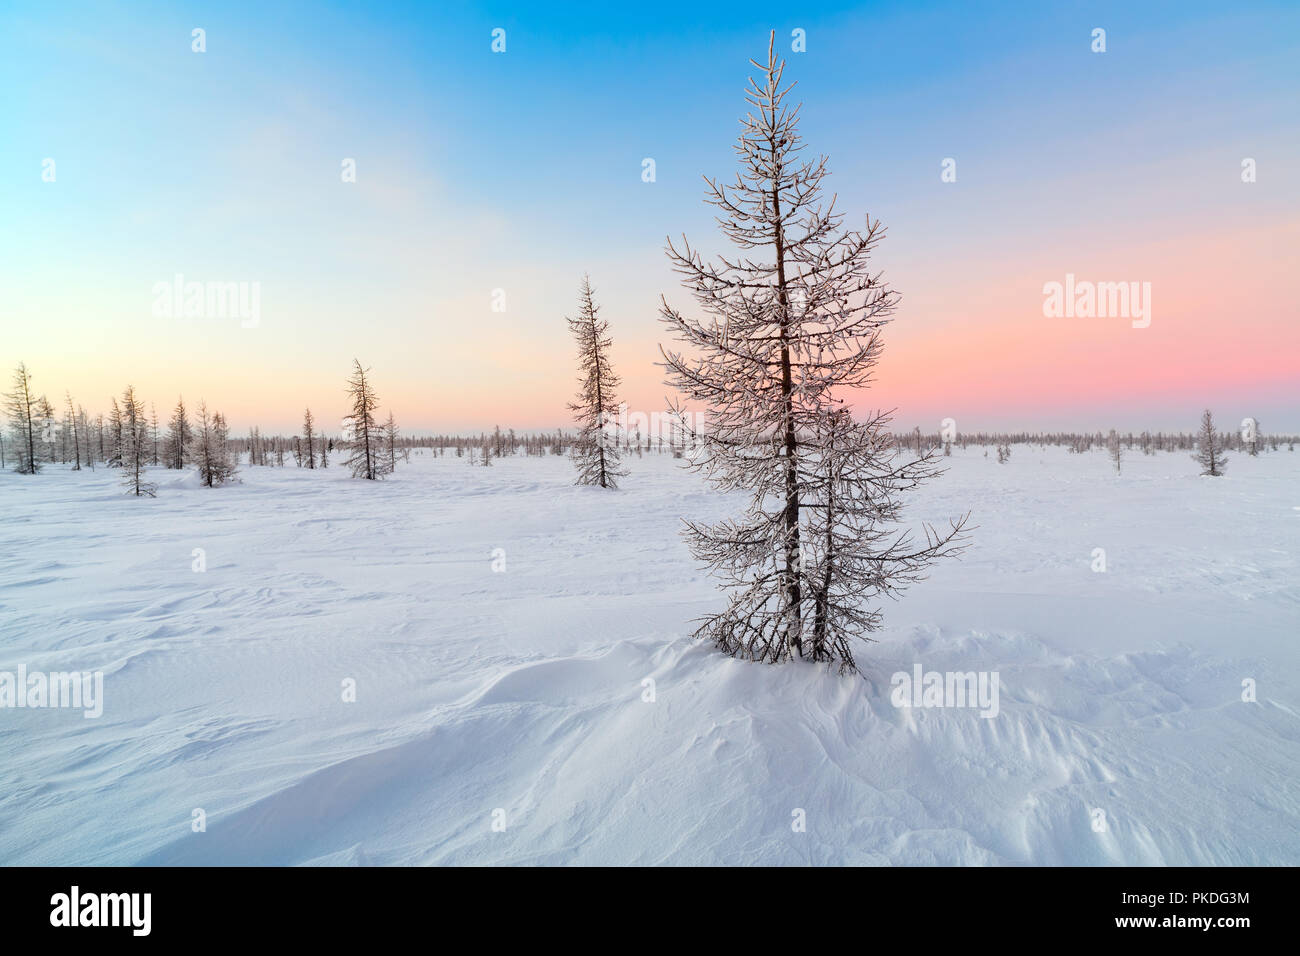 Paysage d'hiver avec des arbres couverts de neige Banque D'Images